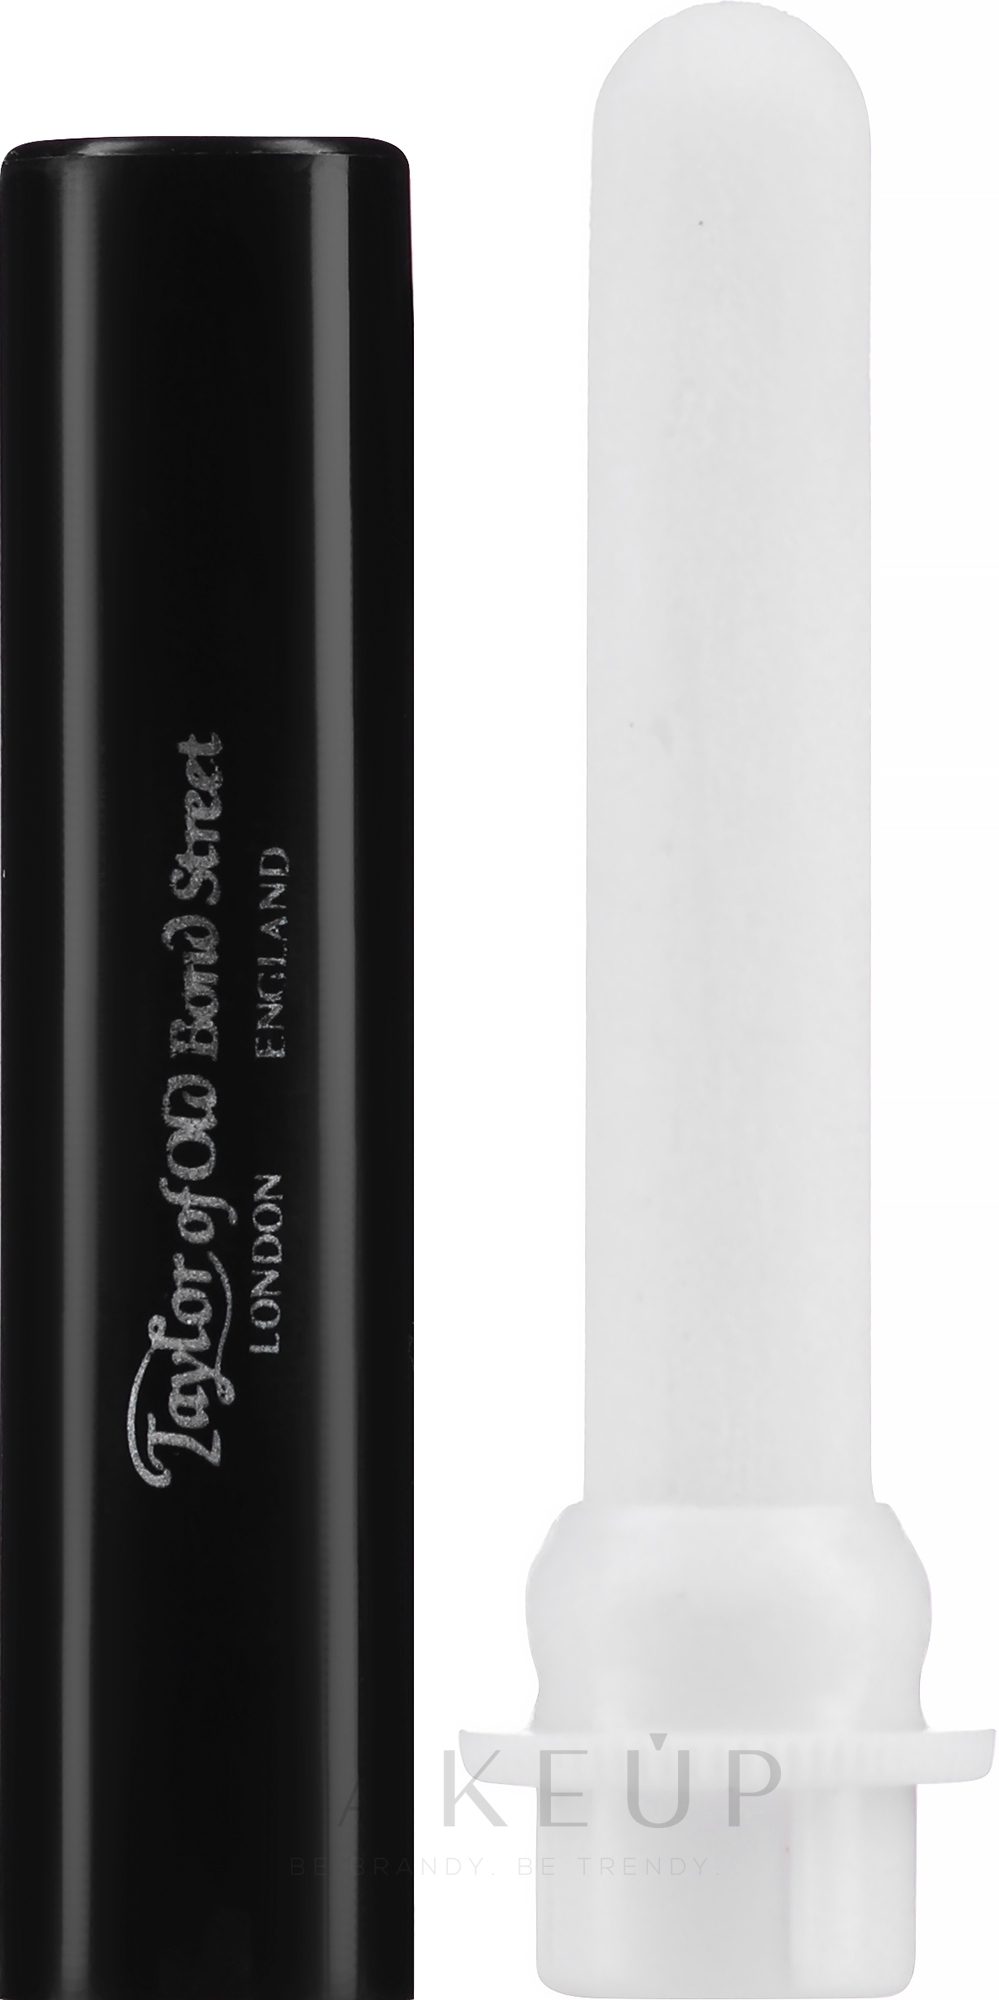 Alaunstift zur Behandlung kleiner Schnittwunden - Taylor of Old Bond Street Styptic Pencil — Bild 10 g